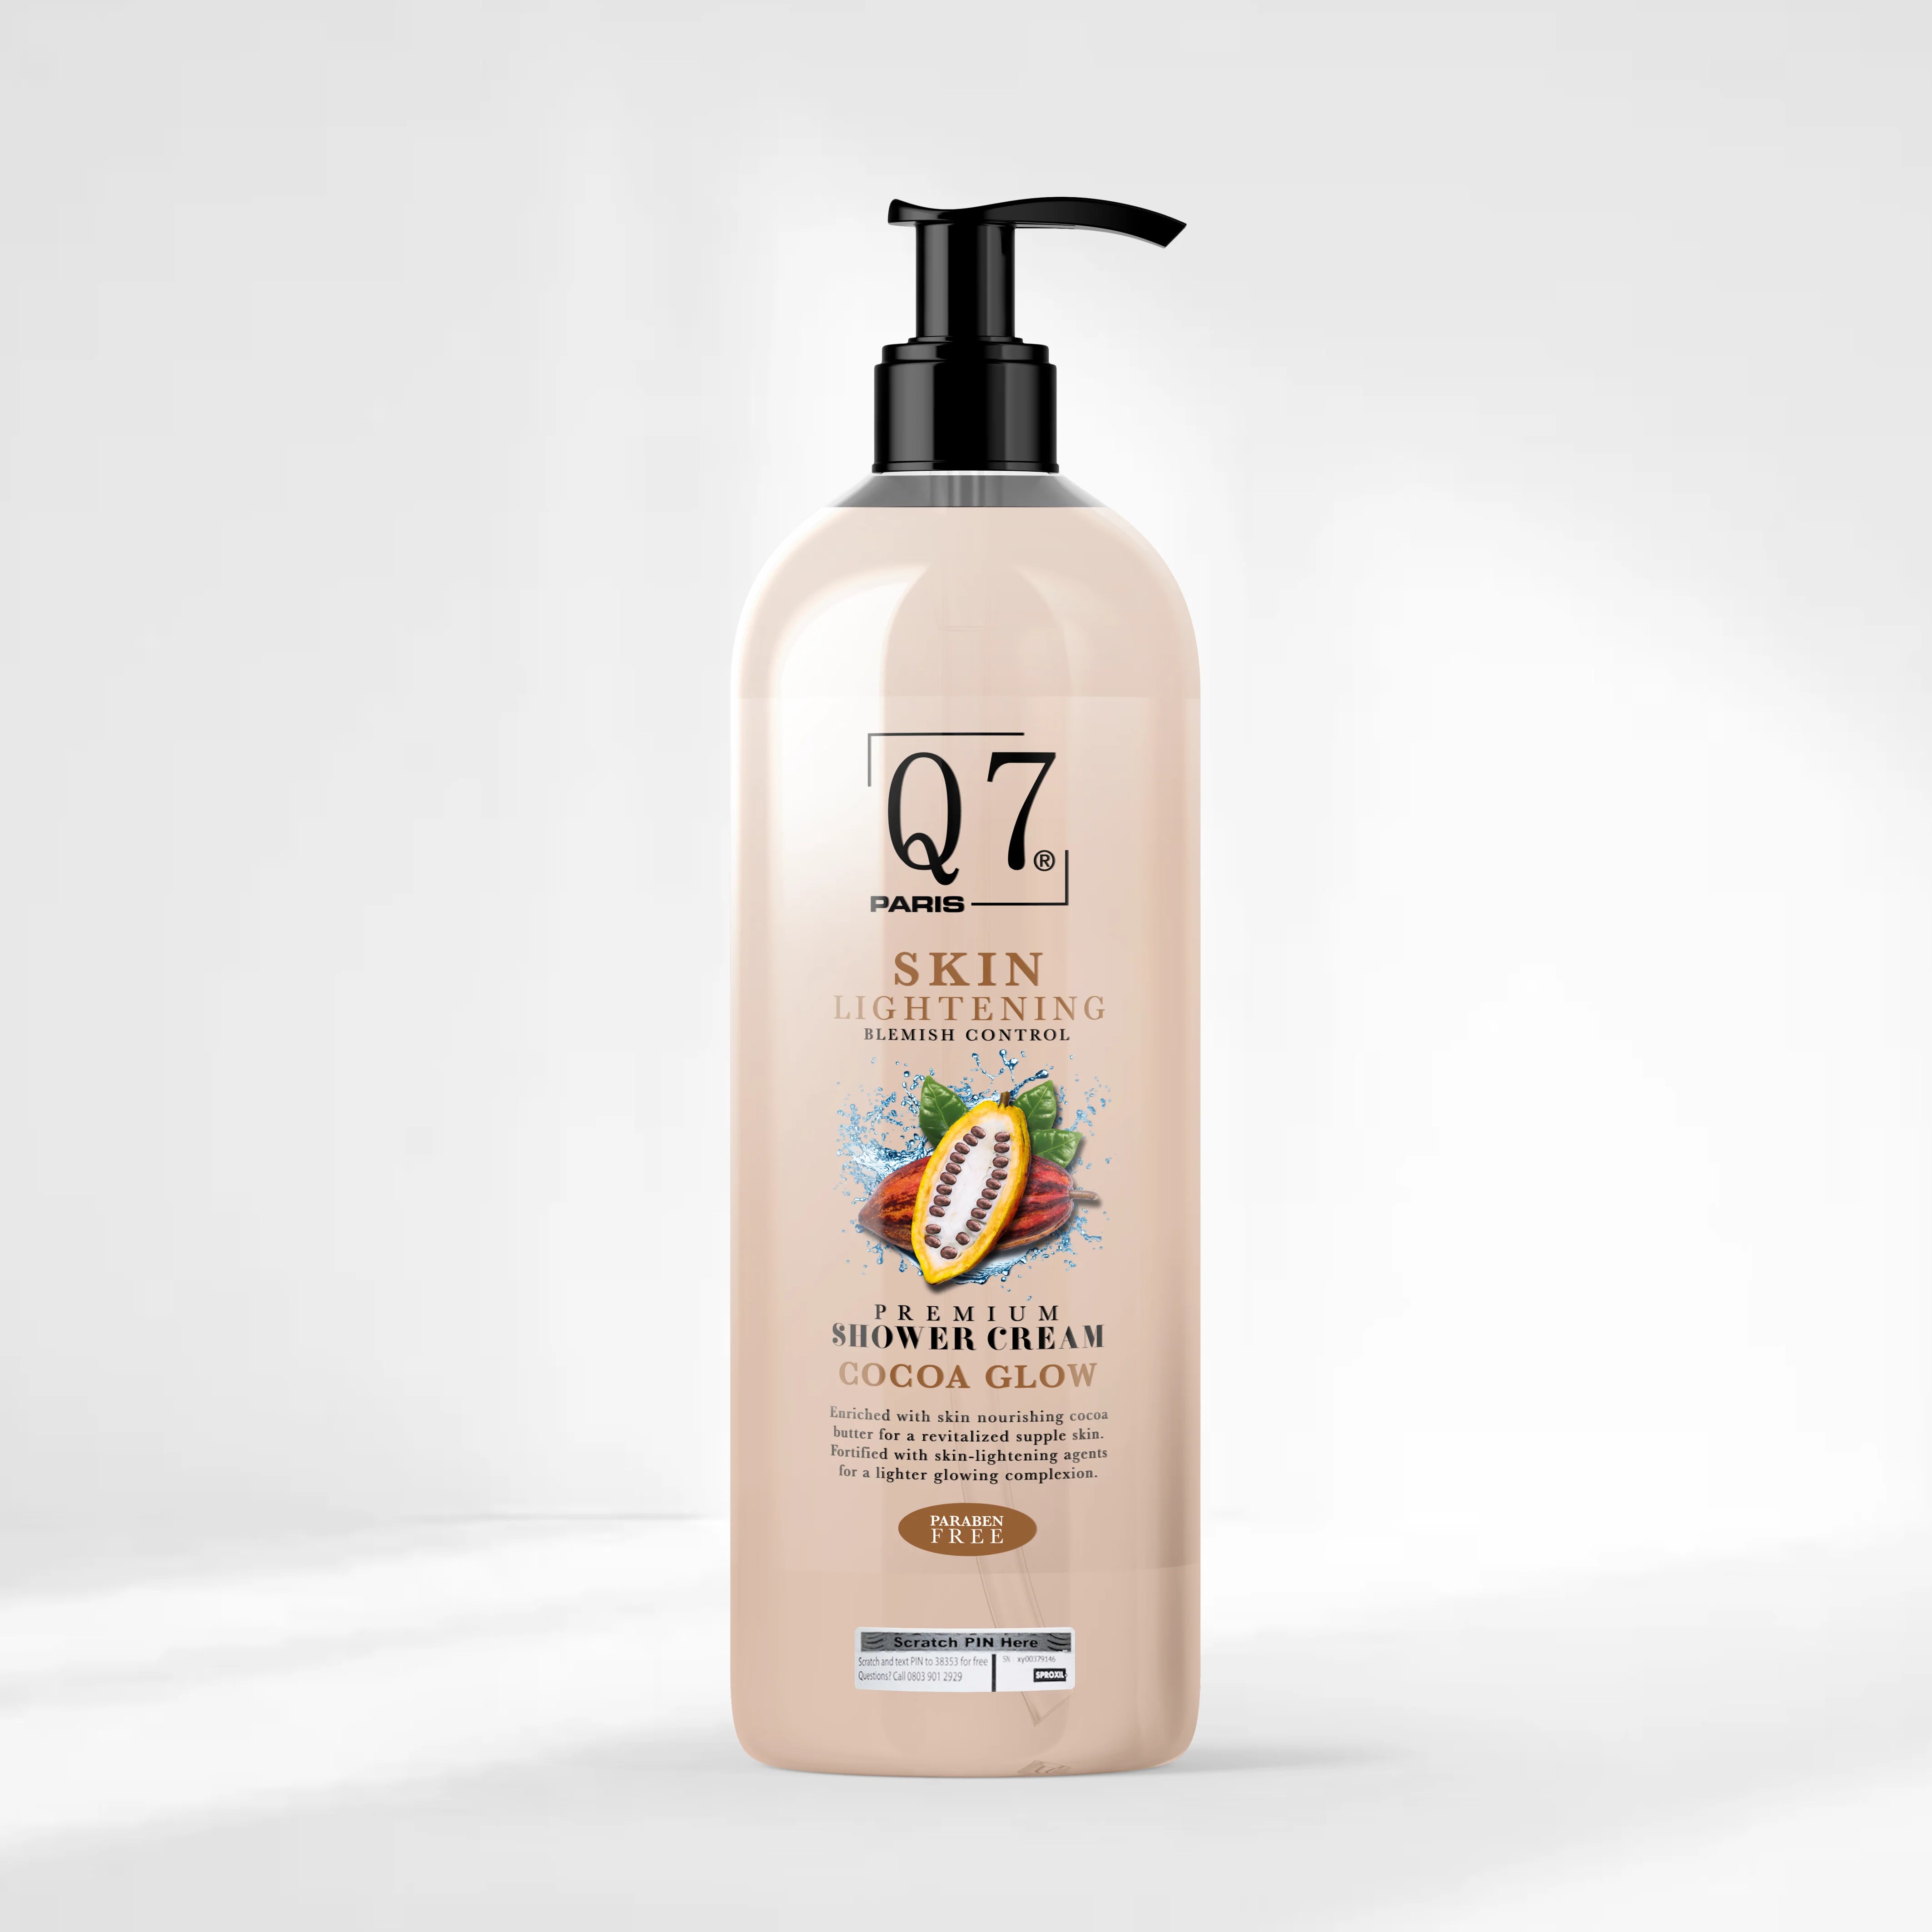 Q7Paris Cocoa Glow Skin Lightening Premium Shower Cream: Blemish Control with Licorice - 1000ml